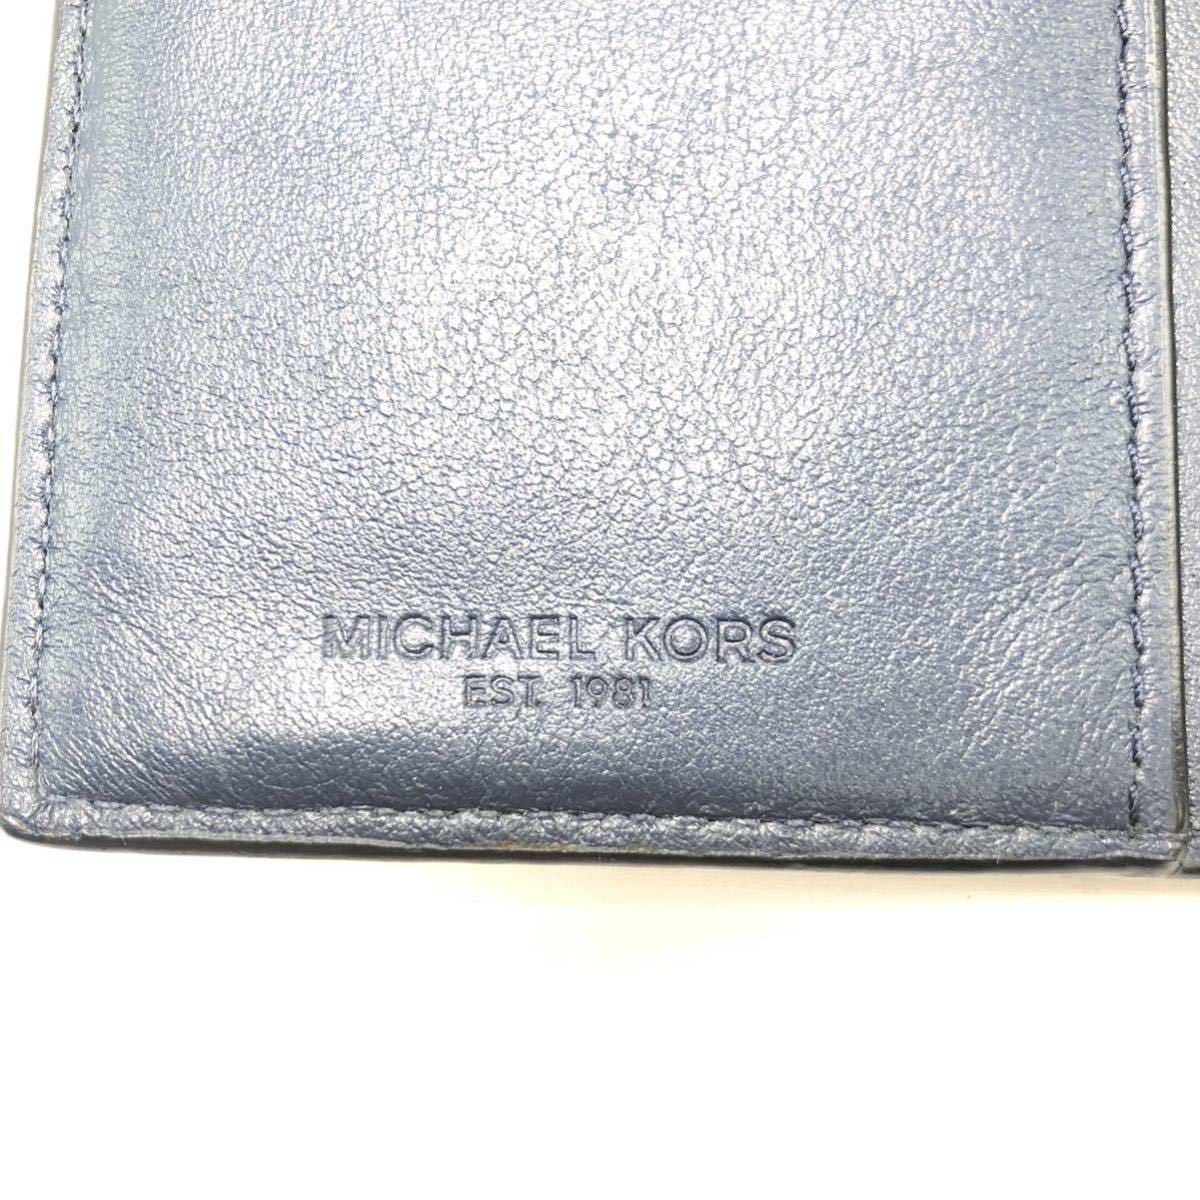 MICHAEL KORS マイケルコース 長財布 ウォレット 型押しカモフラージュ KN-L4WV_画像6